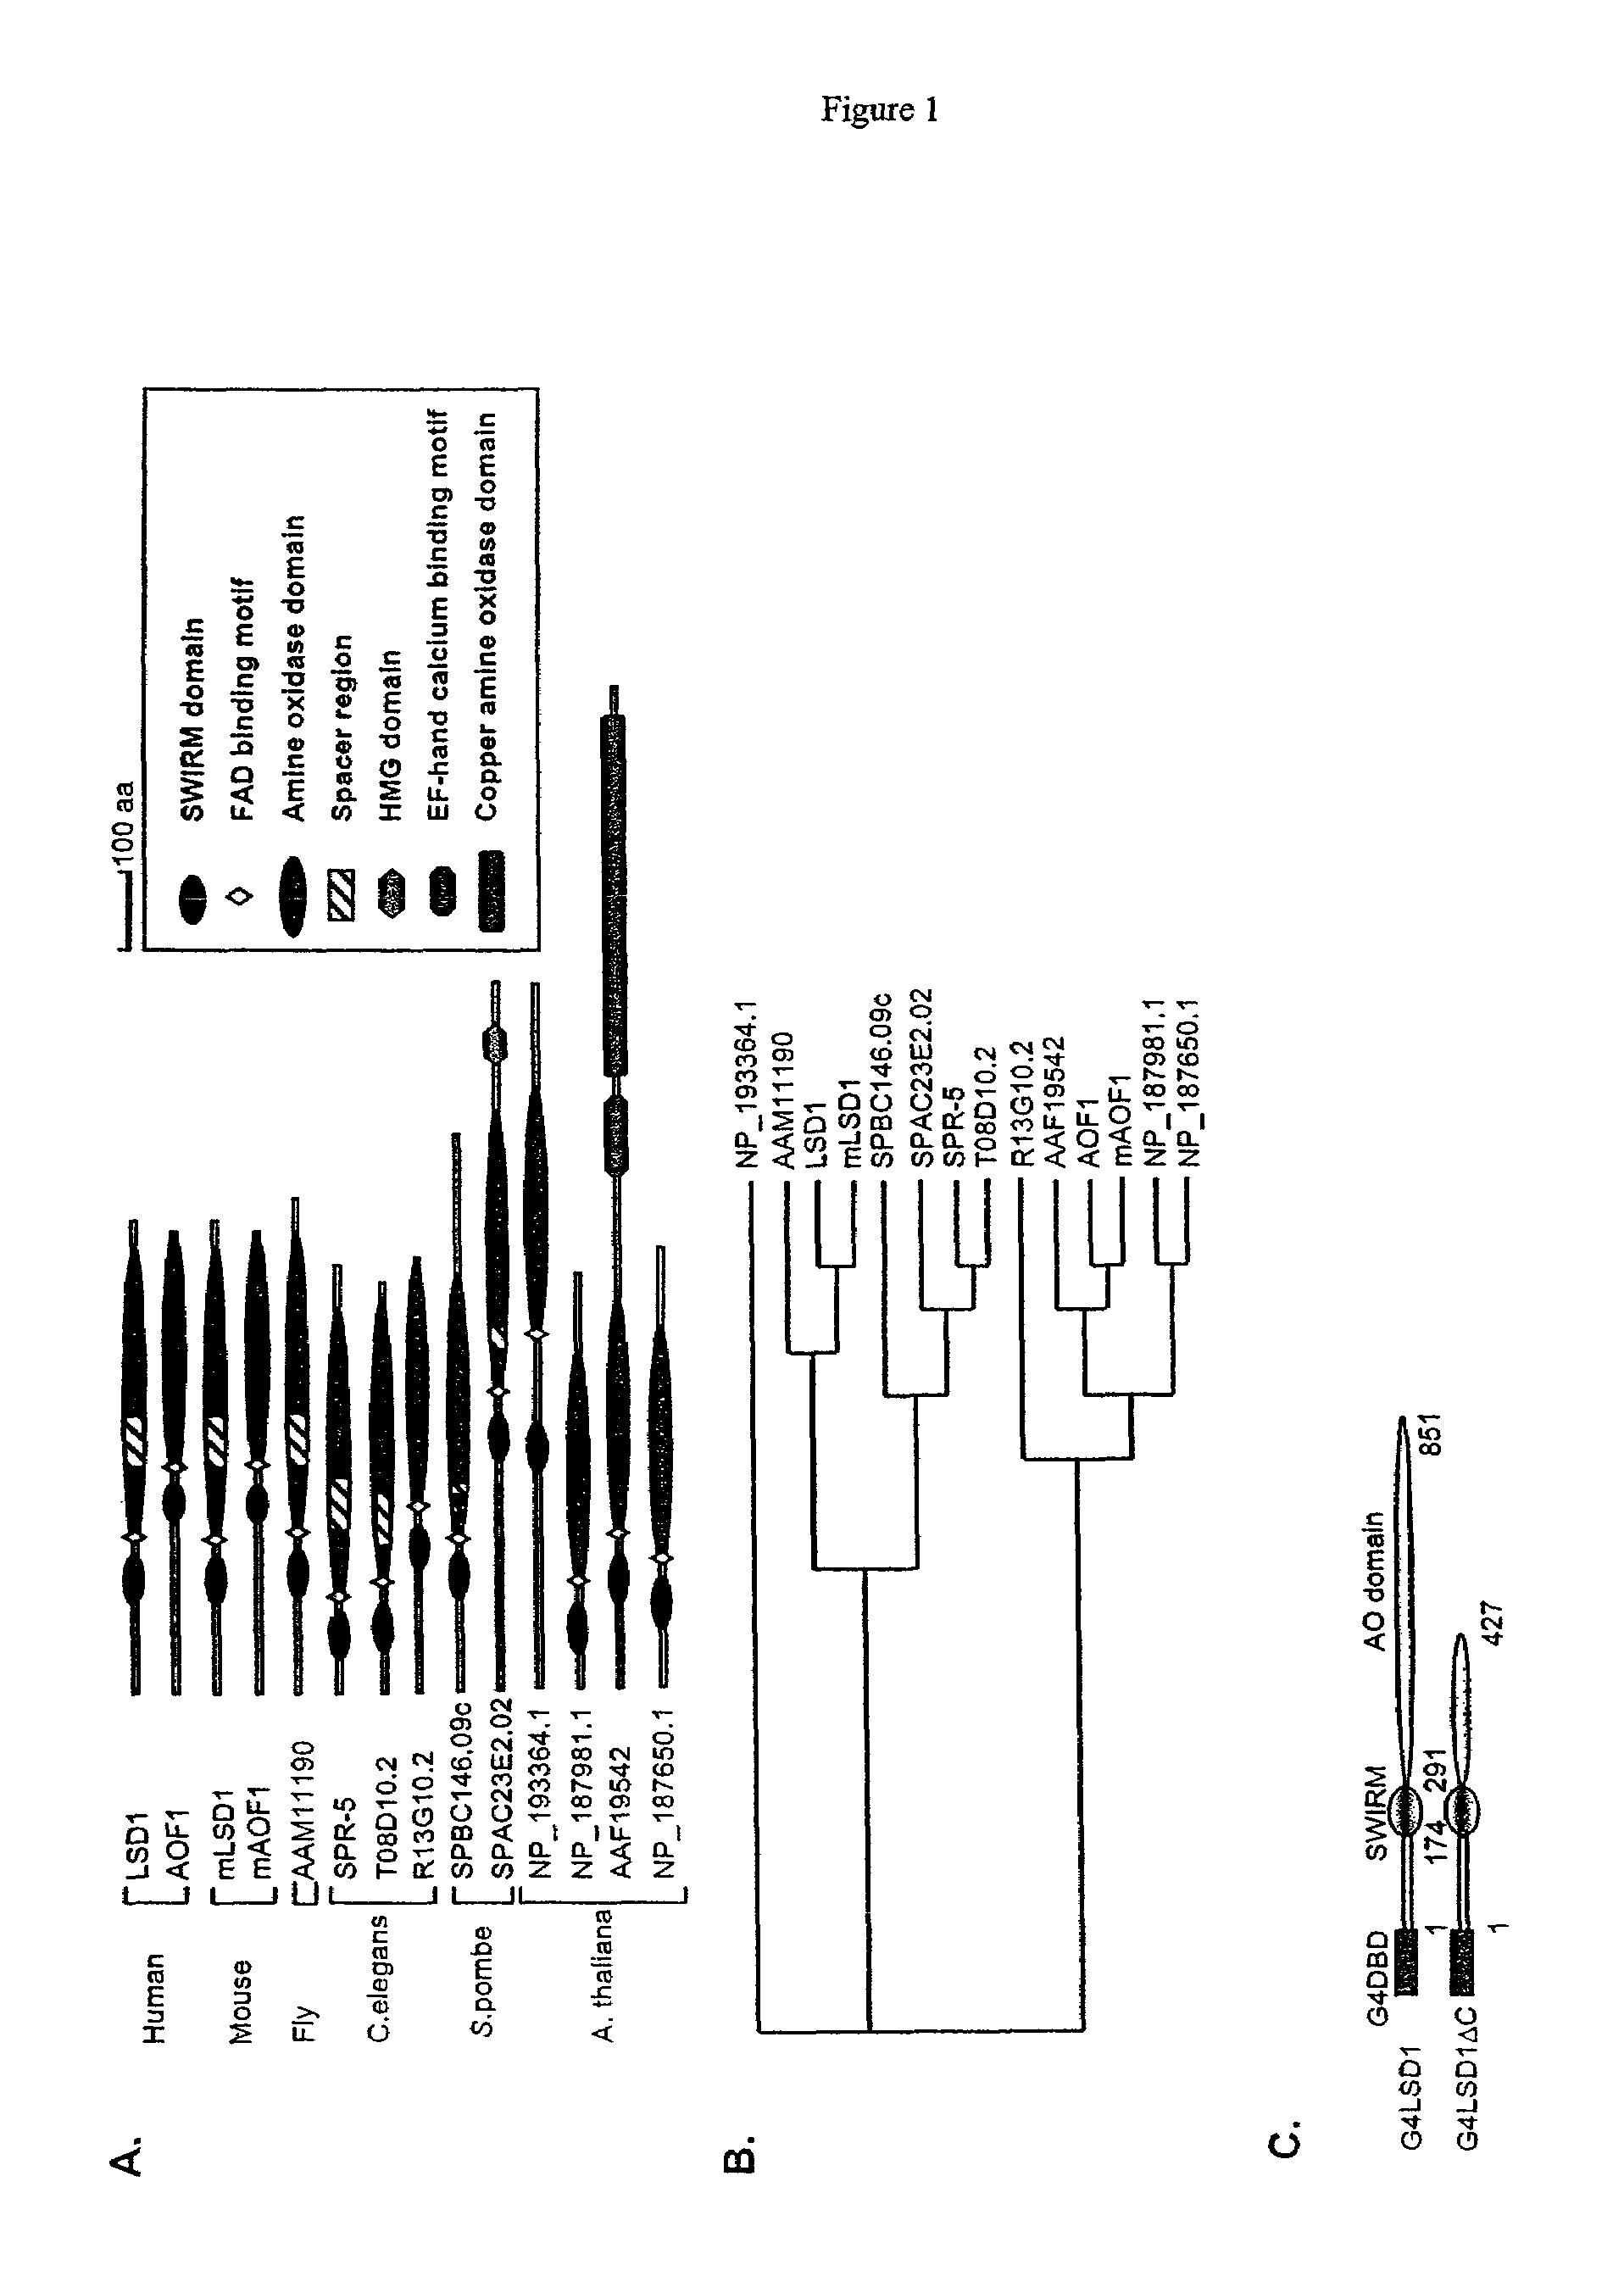 Histone demethylation mediated by the nuclear amine oxidase homolog LSD1